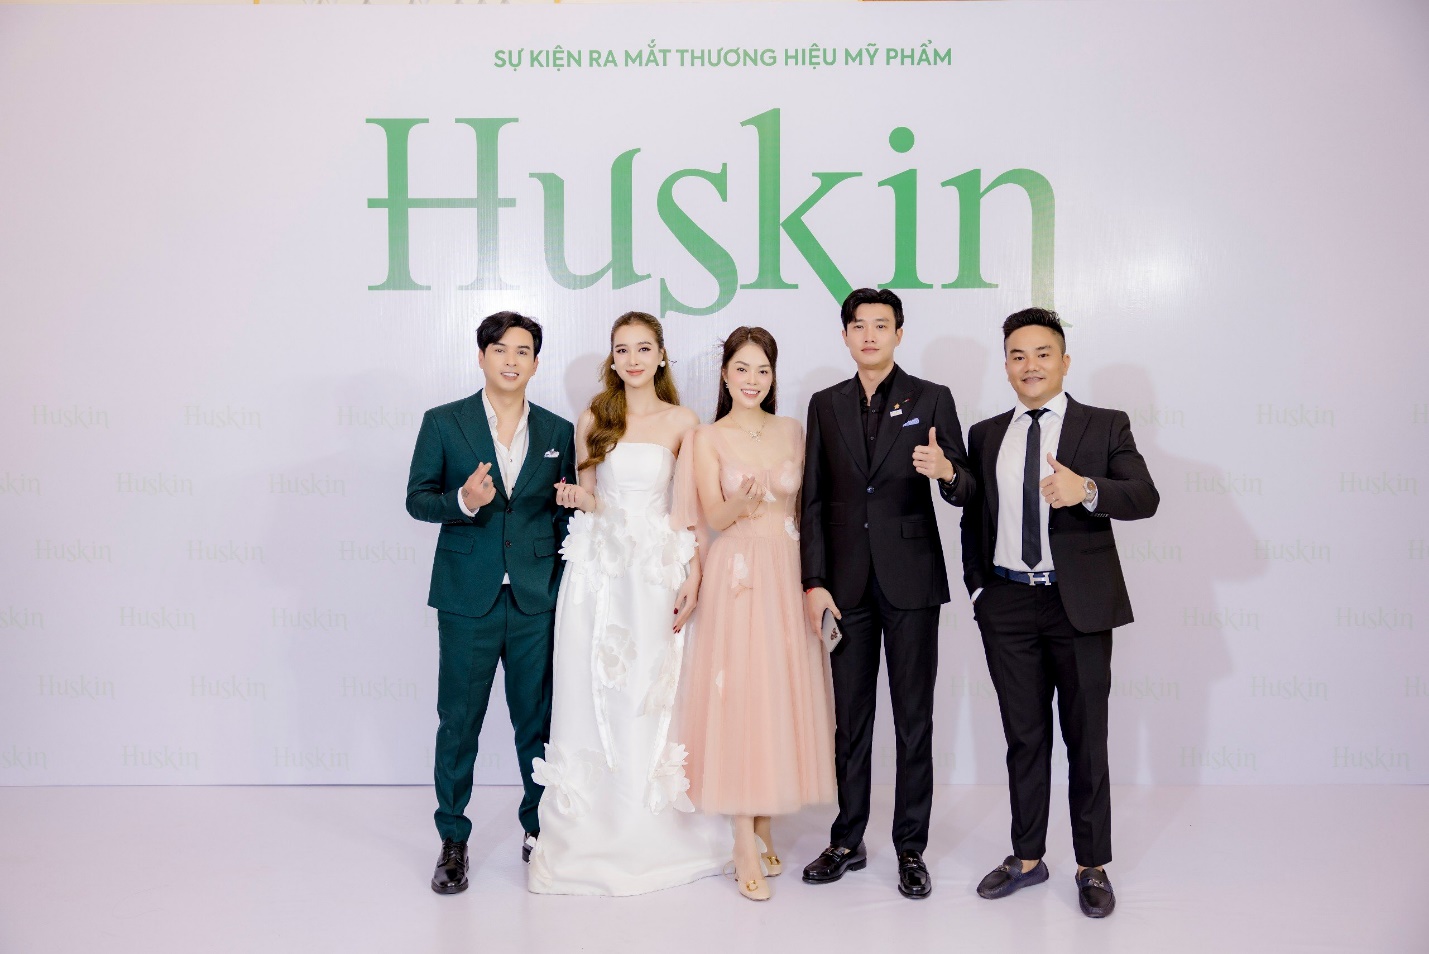 Hồ Quang Hiếu, Tuệ Như lên chức chủ tịch công ty mỹ phẩm Huskin - 5